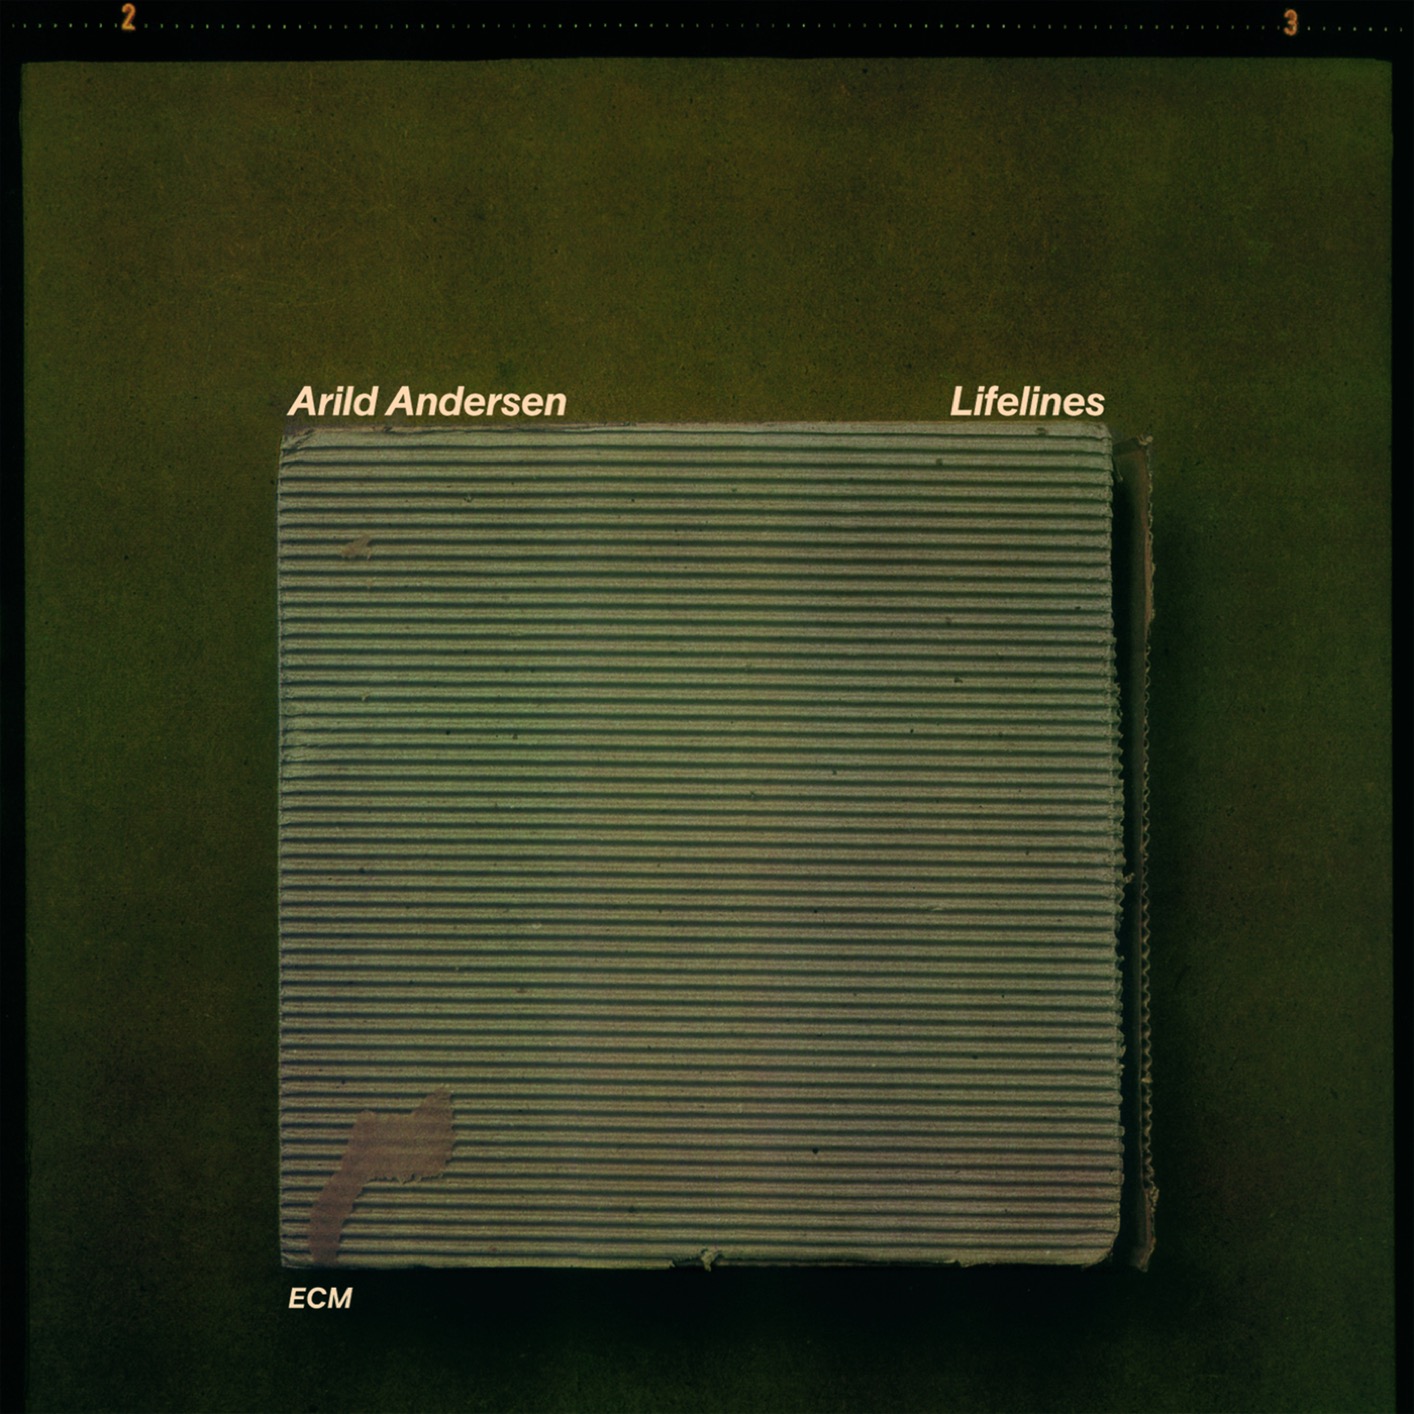 Arild Andersen - Lifelines (1981/2019) [FLAC 24bit/96kHz]